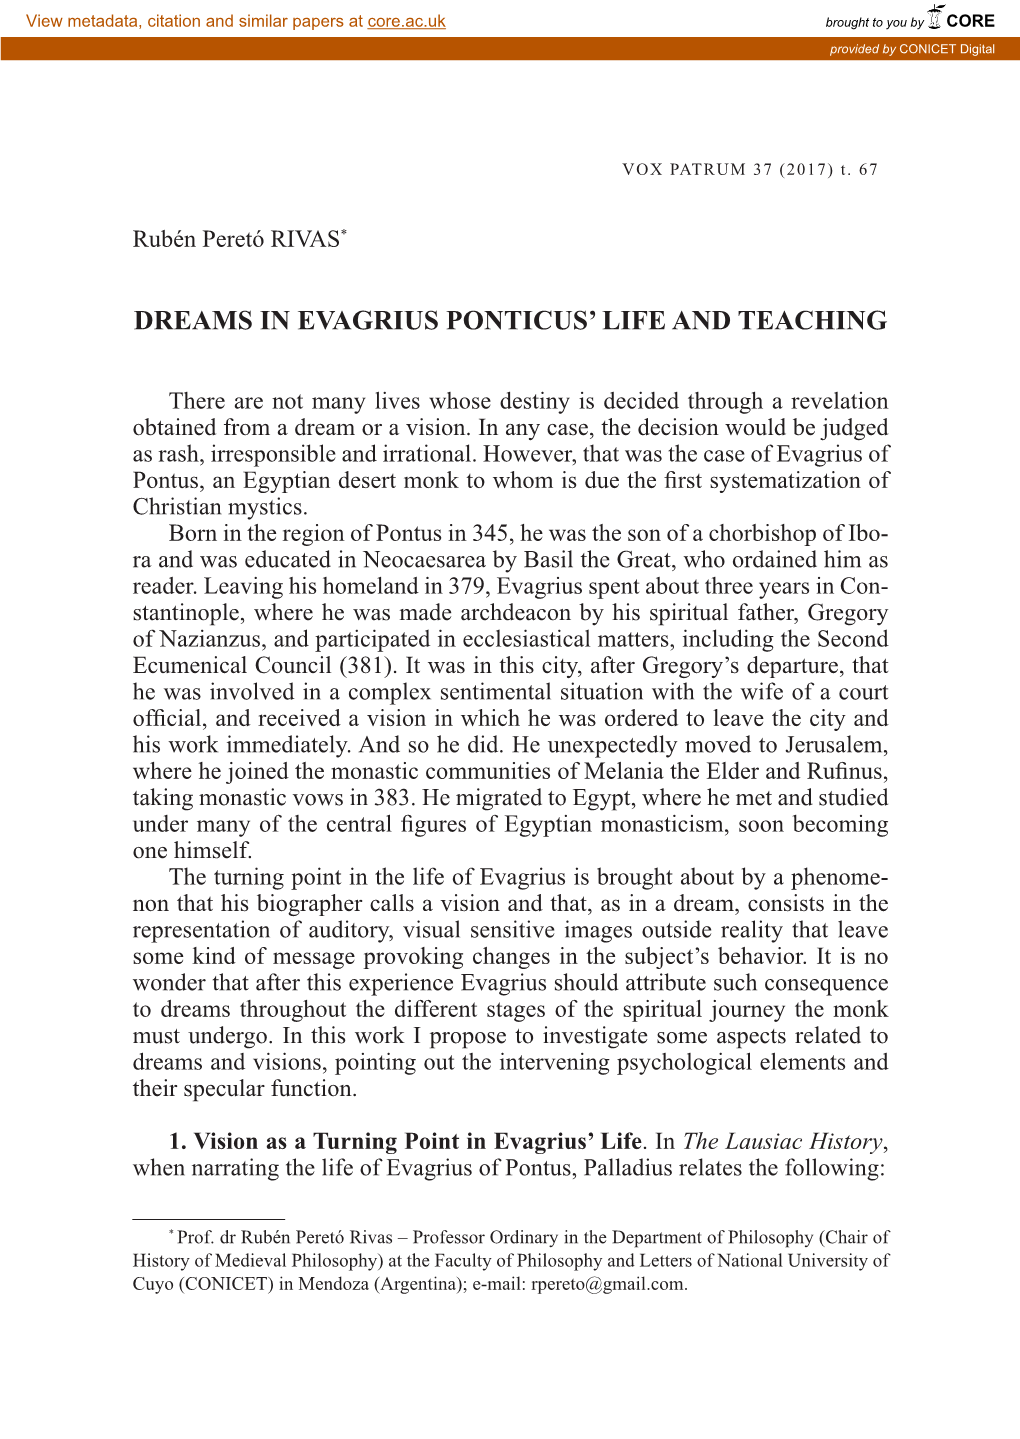 Dreams in Evagrius Ponticus' Life and Teaching